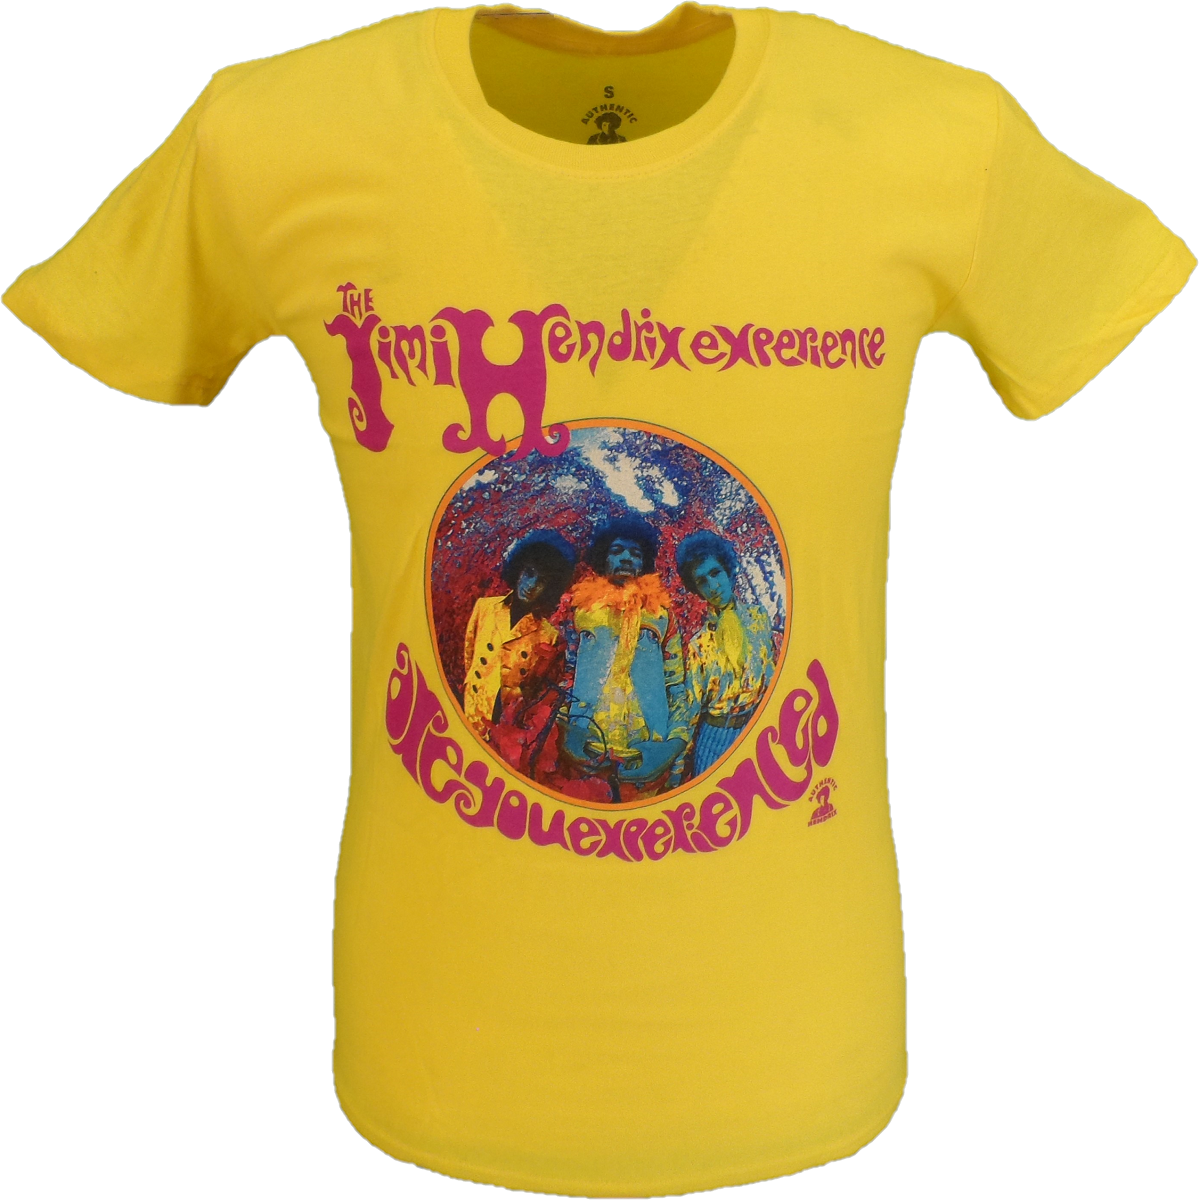 Camiseta oficial amarilla para hombre de Jimi Hendrix "¿Tienes experiencia?"